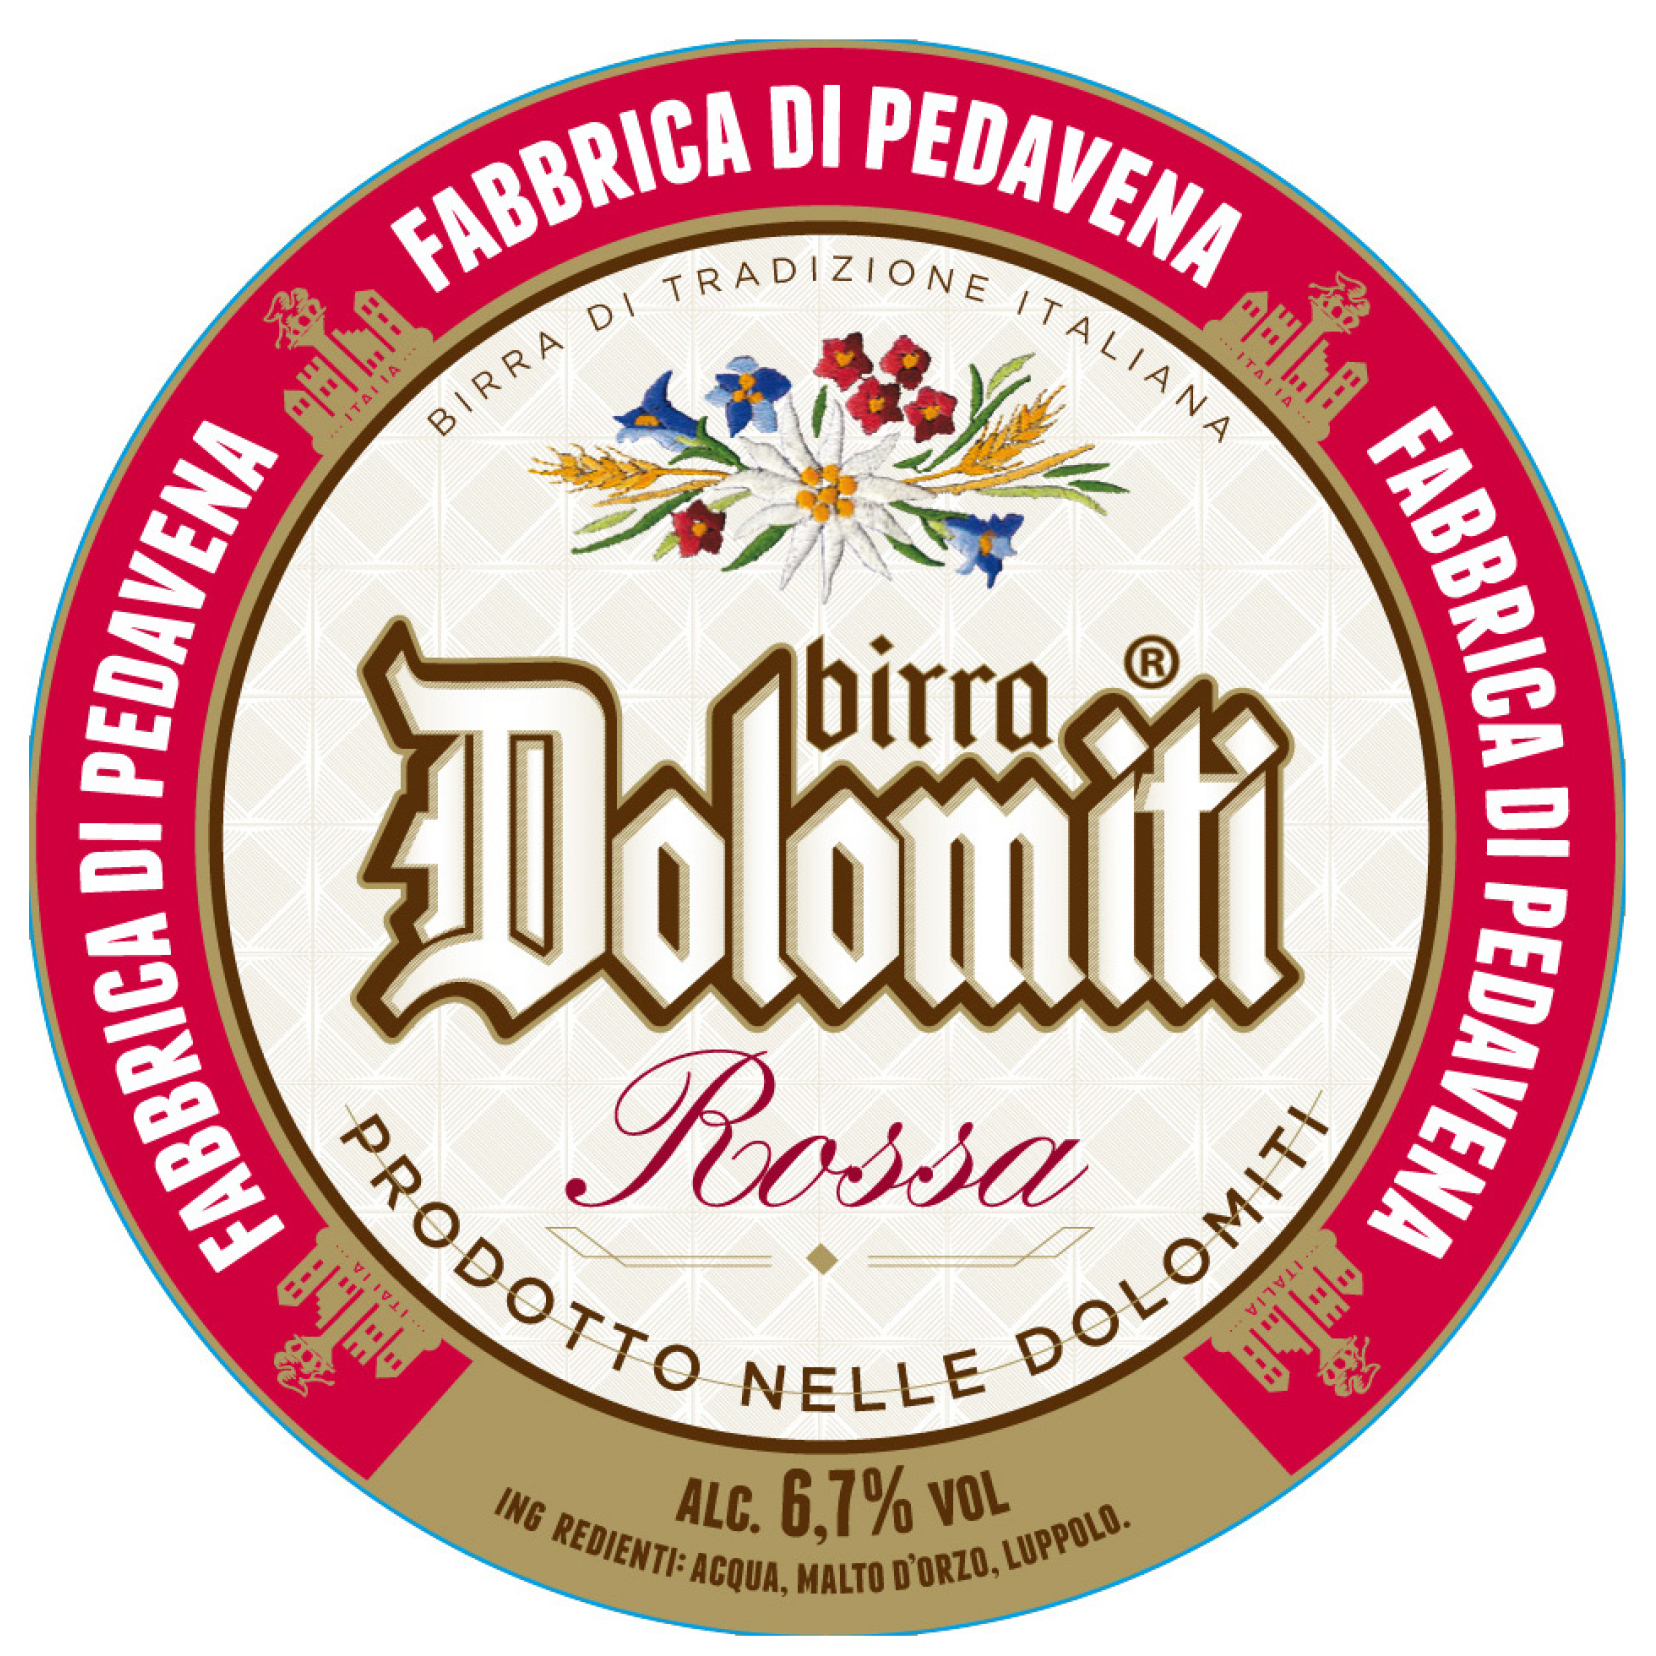 Birra Dolomiti Rossa Fabbrica in Pedavena - Ristorante Pizzeria Pub Birreria Fabbrica di Pedavena Lissone